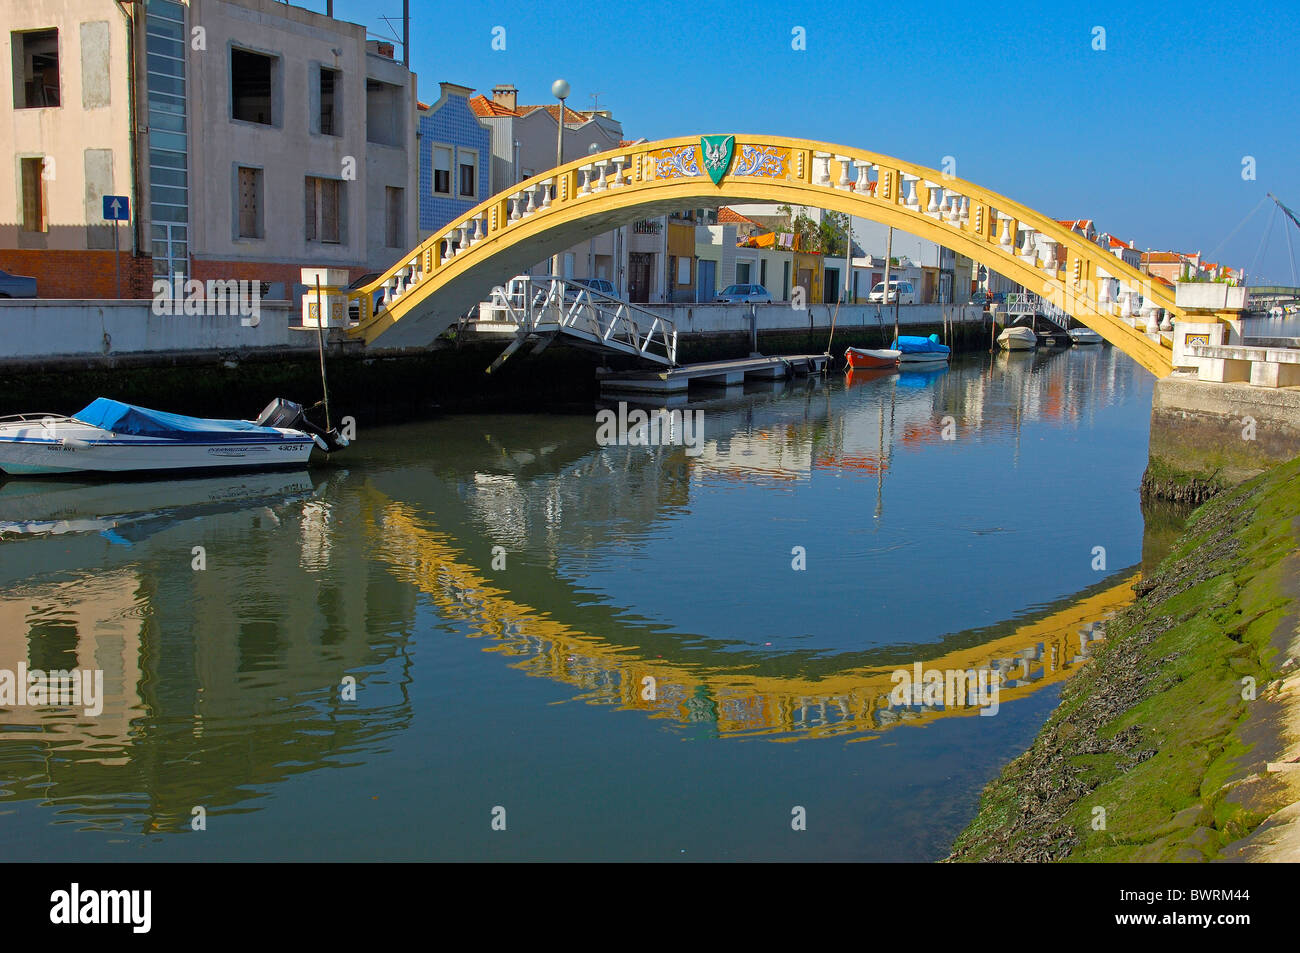 Bridge over Sao Roque canal, Aveiro, Beiras region, Portugal Stock Photo